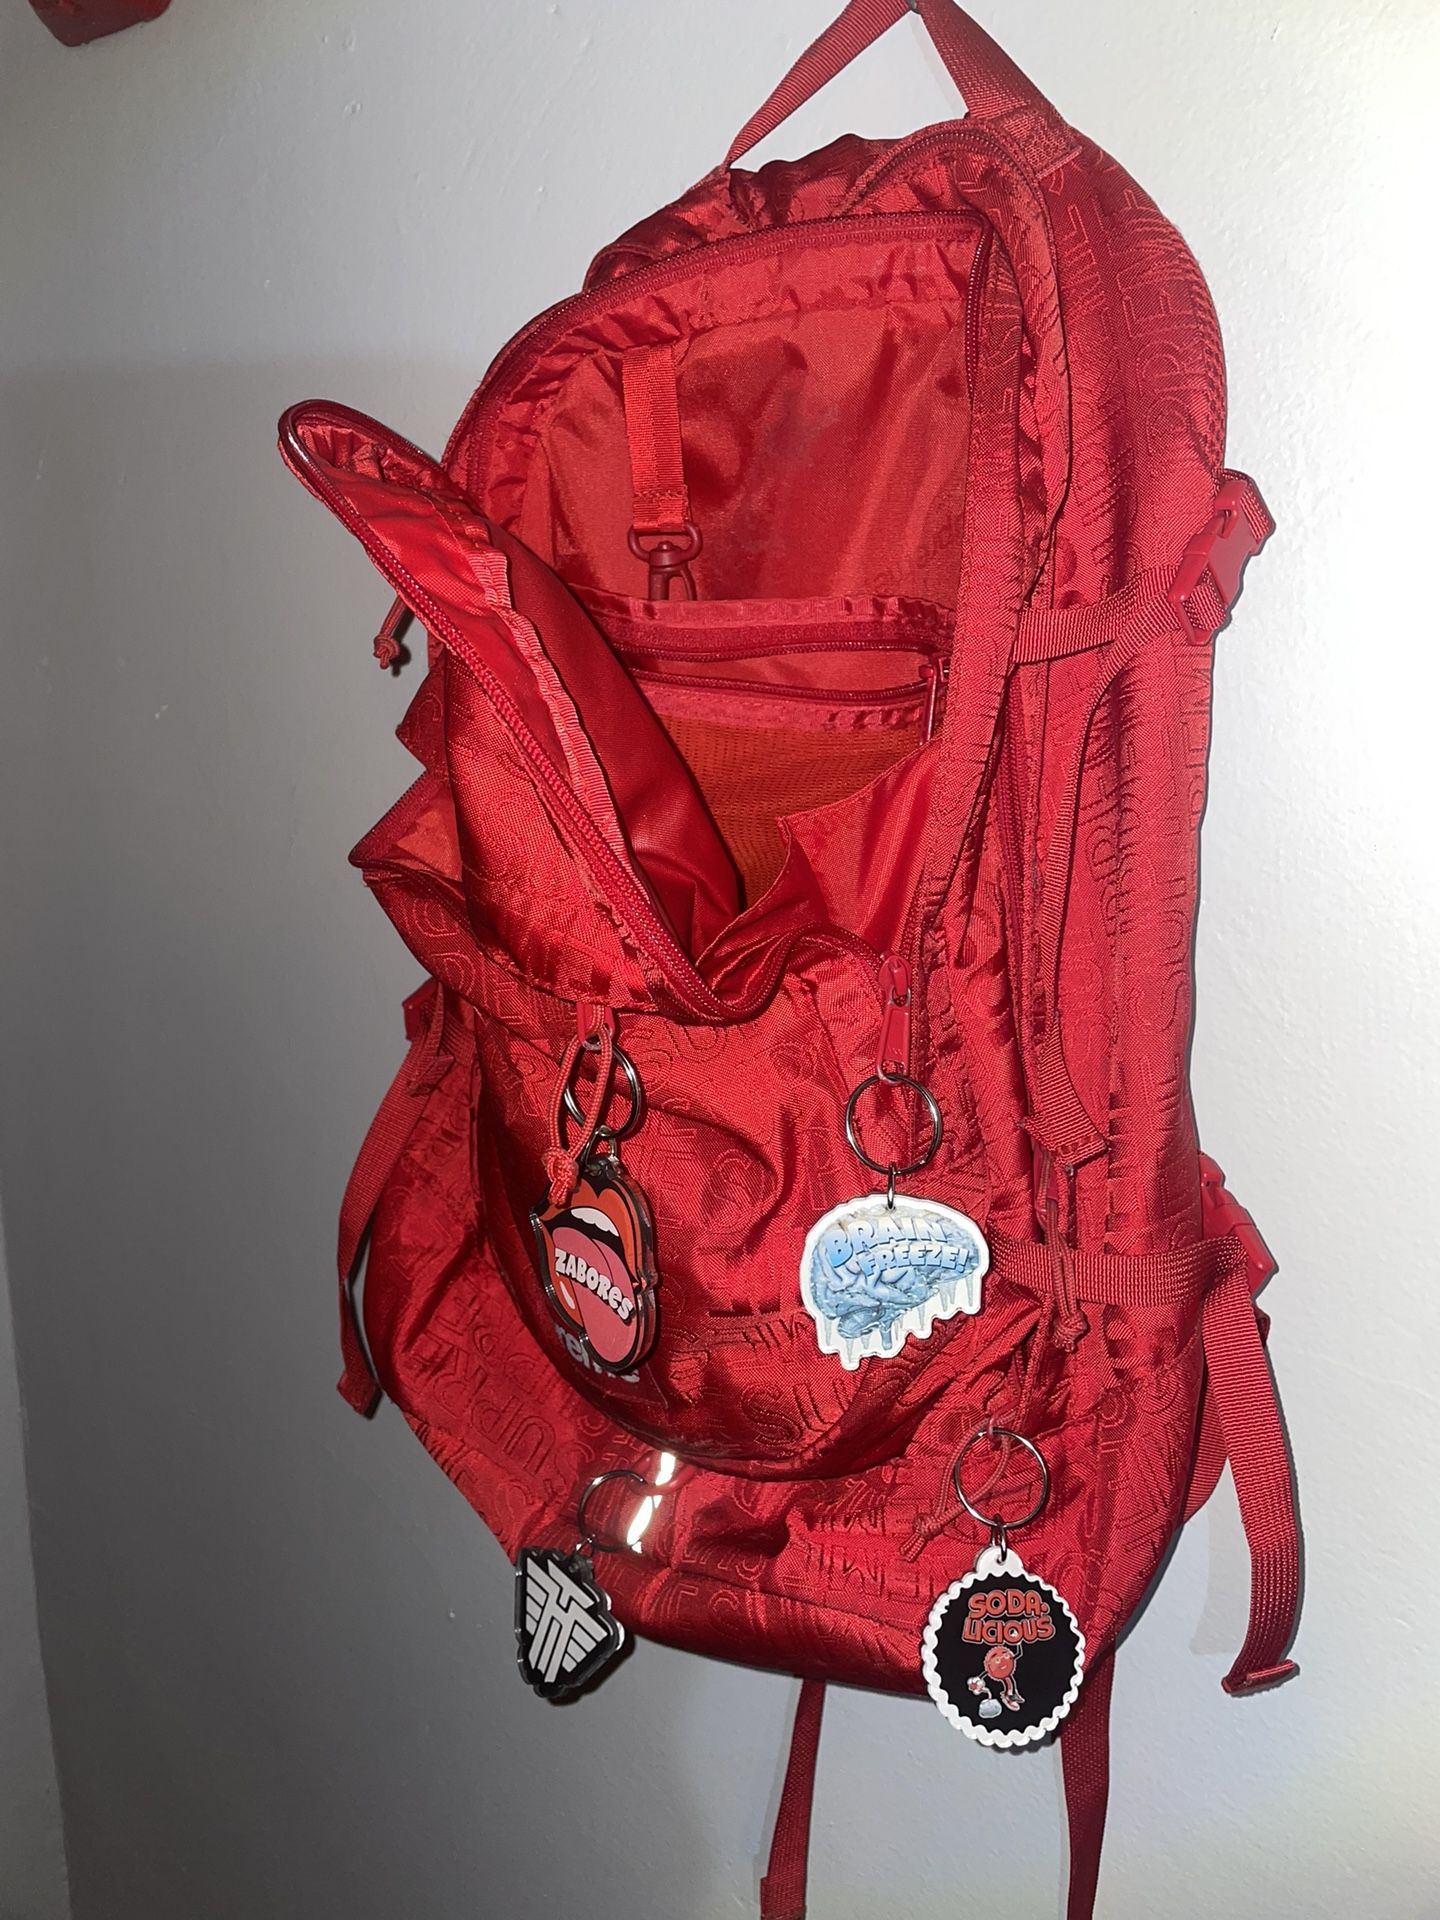 Surpreme Backpack 